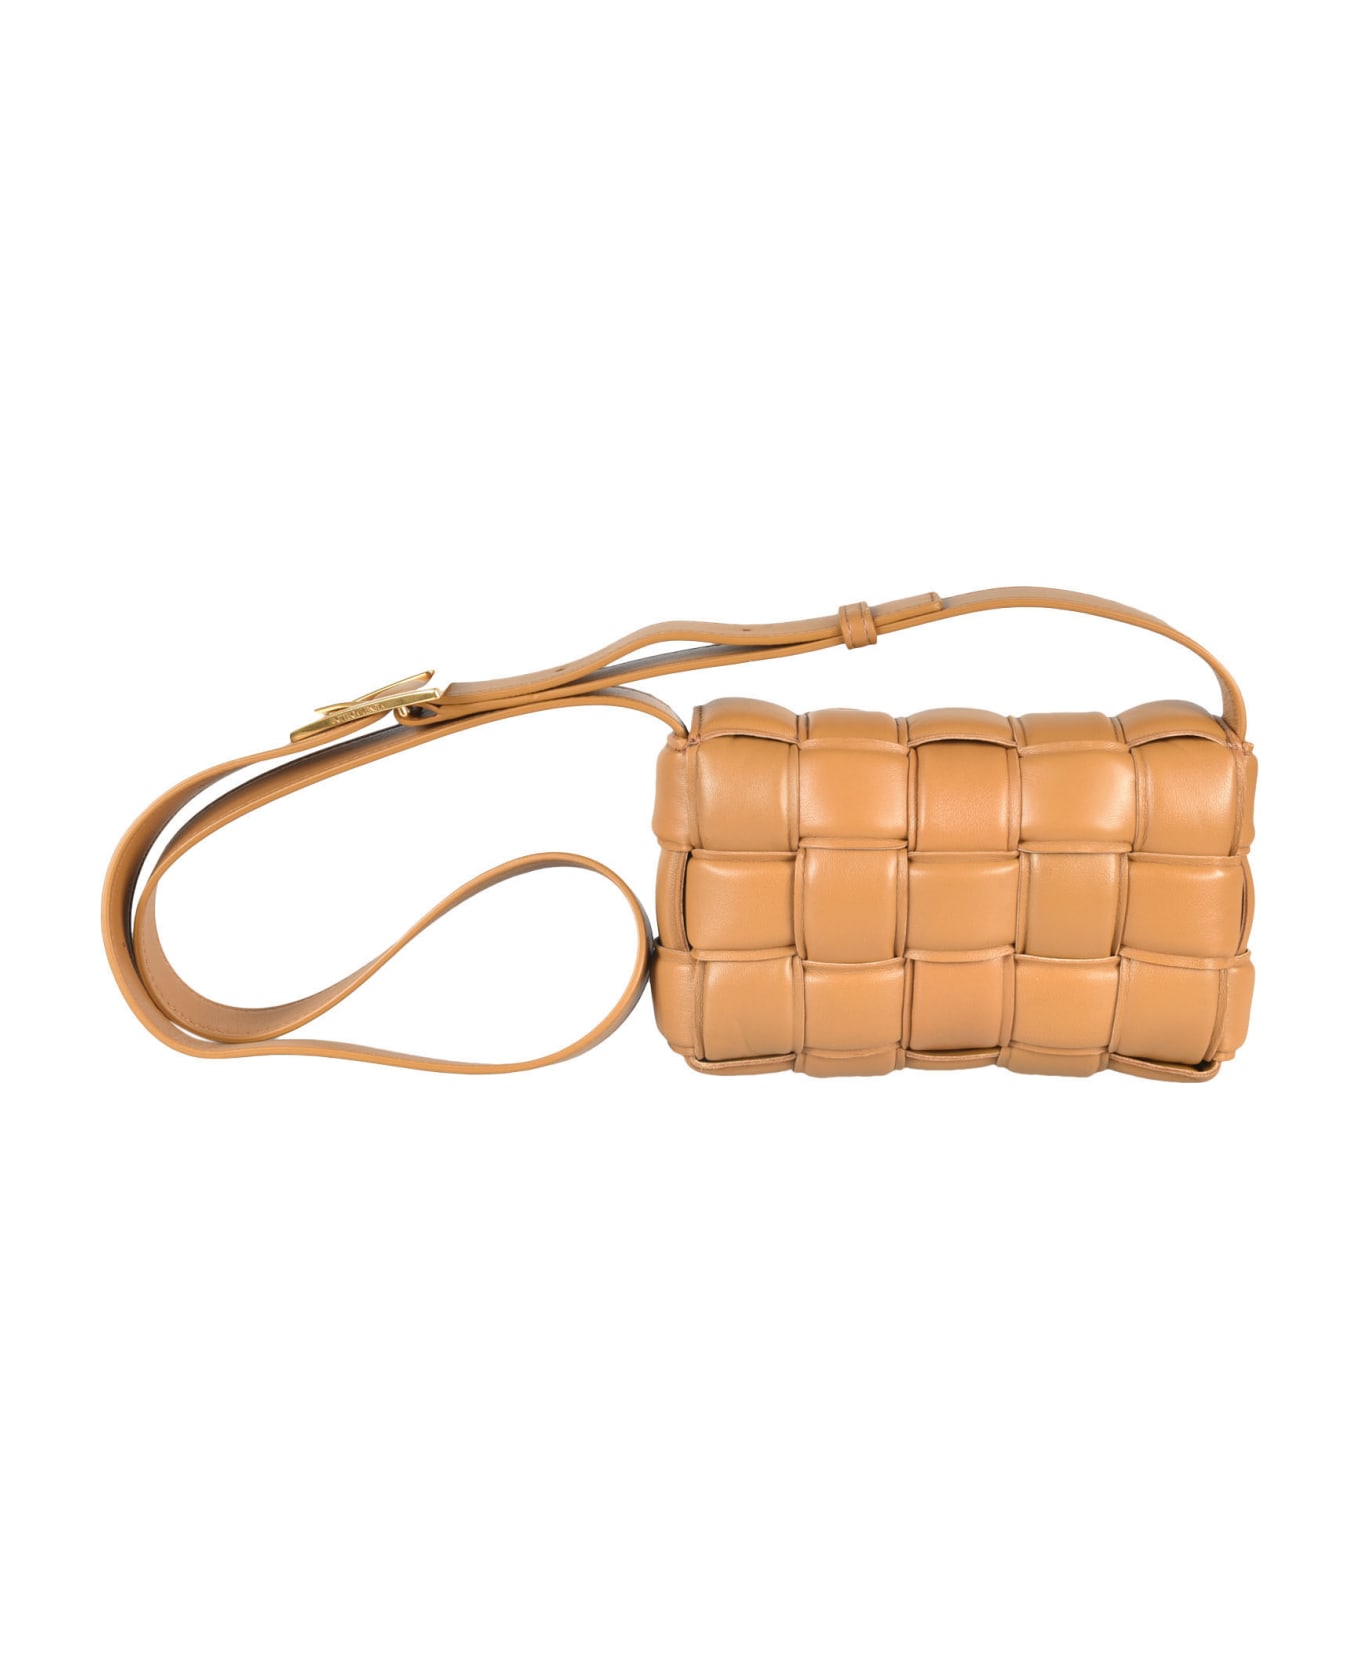 Bottega Veneta Intreccio Shoulder Bag - Camel/Gold